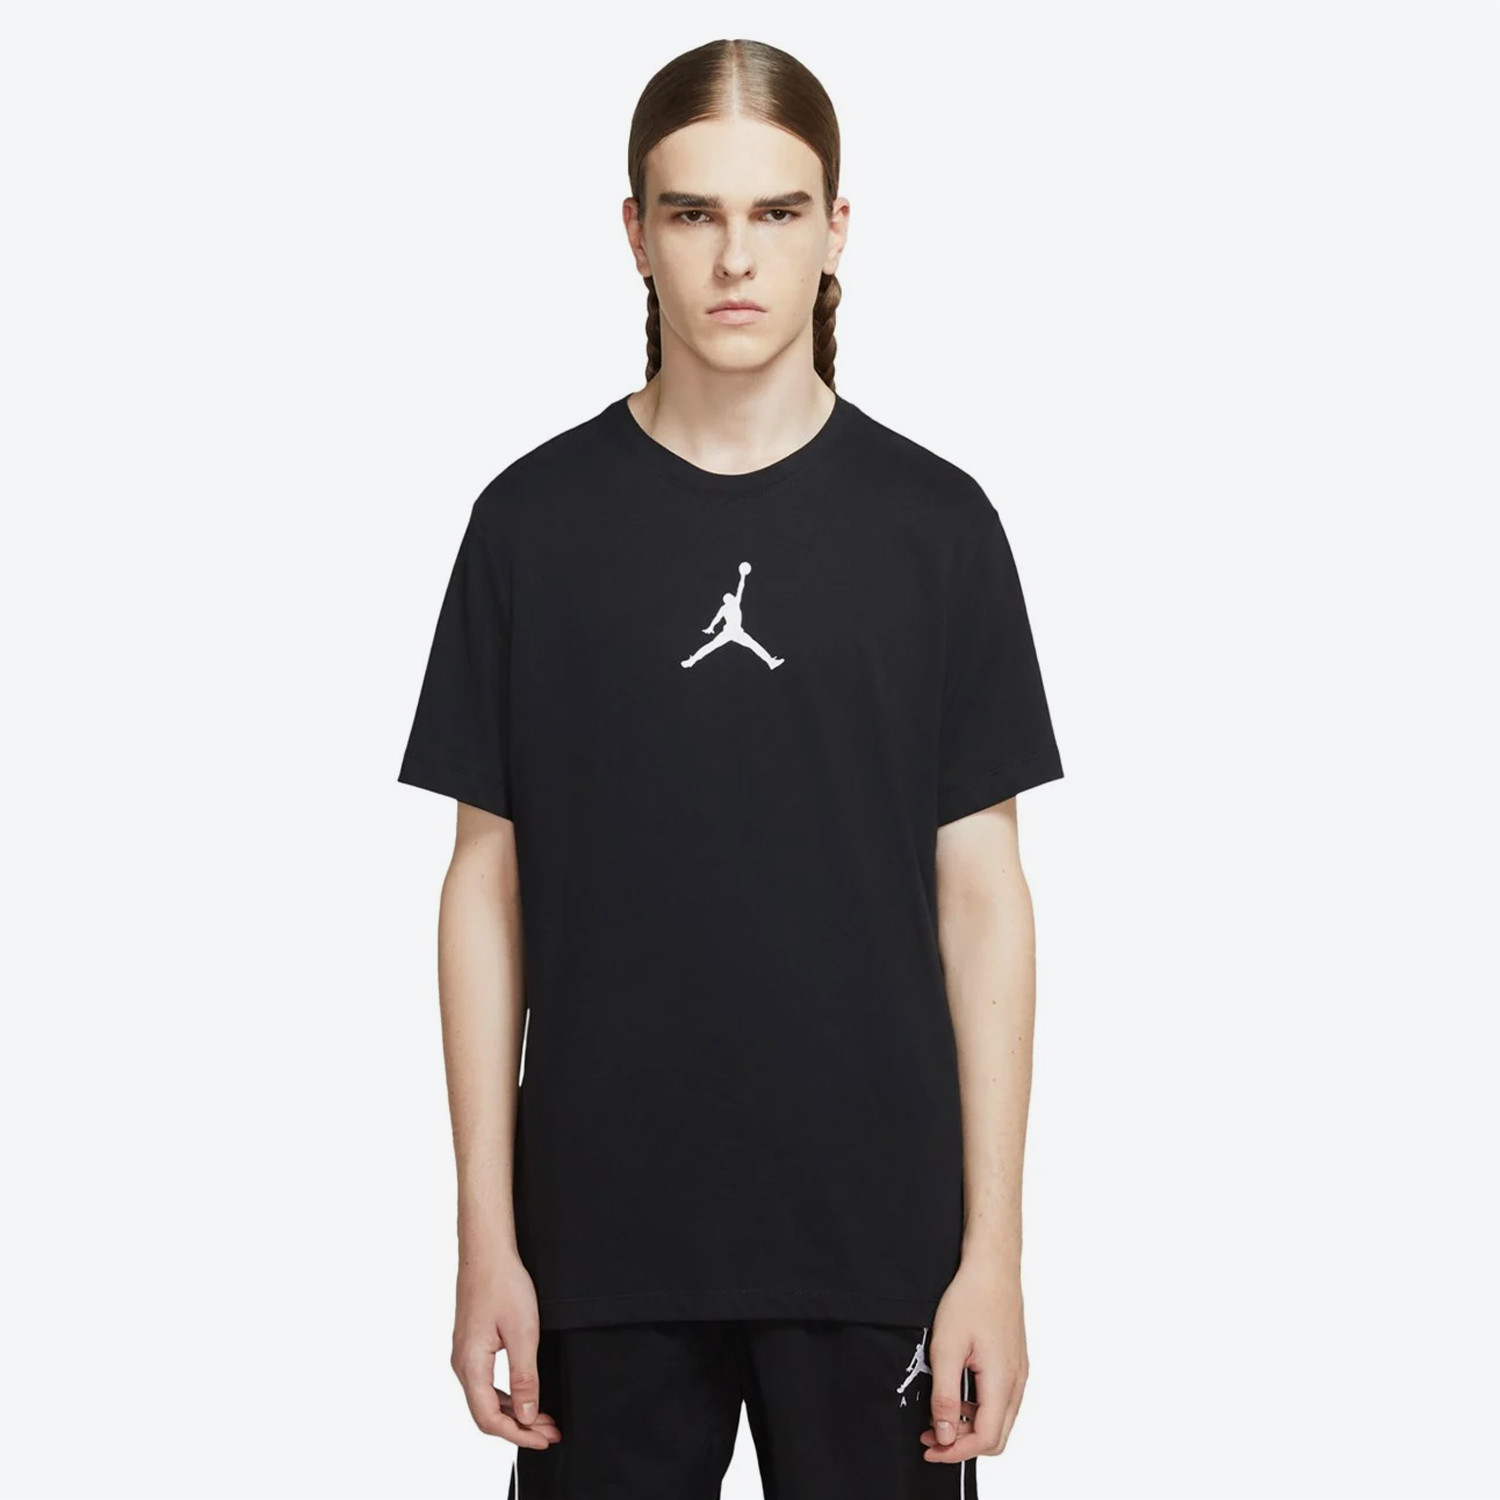 Jordan Jumpman Air T-Shirt